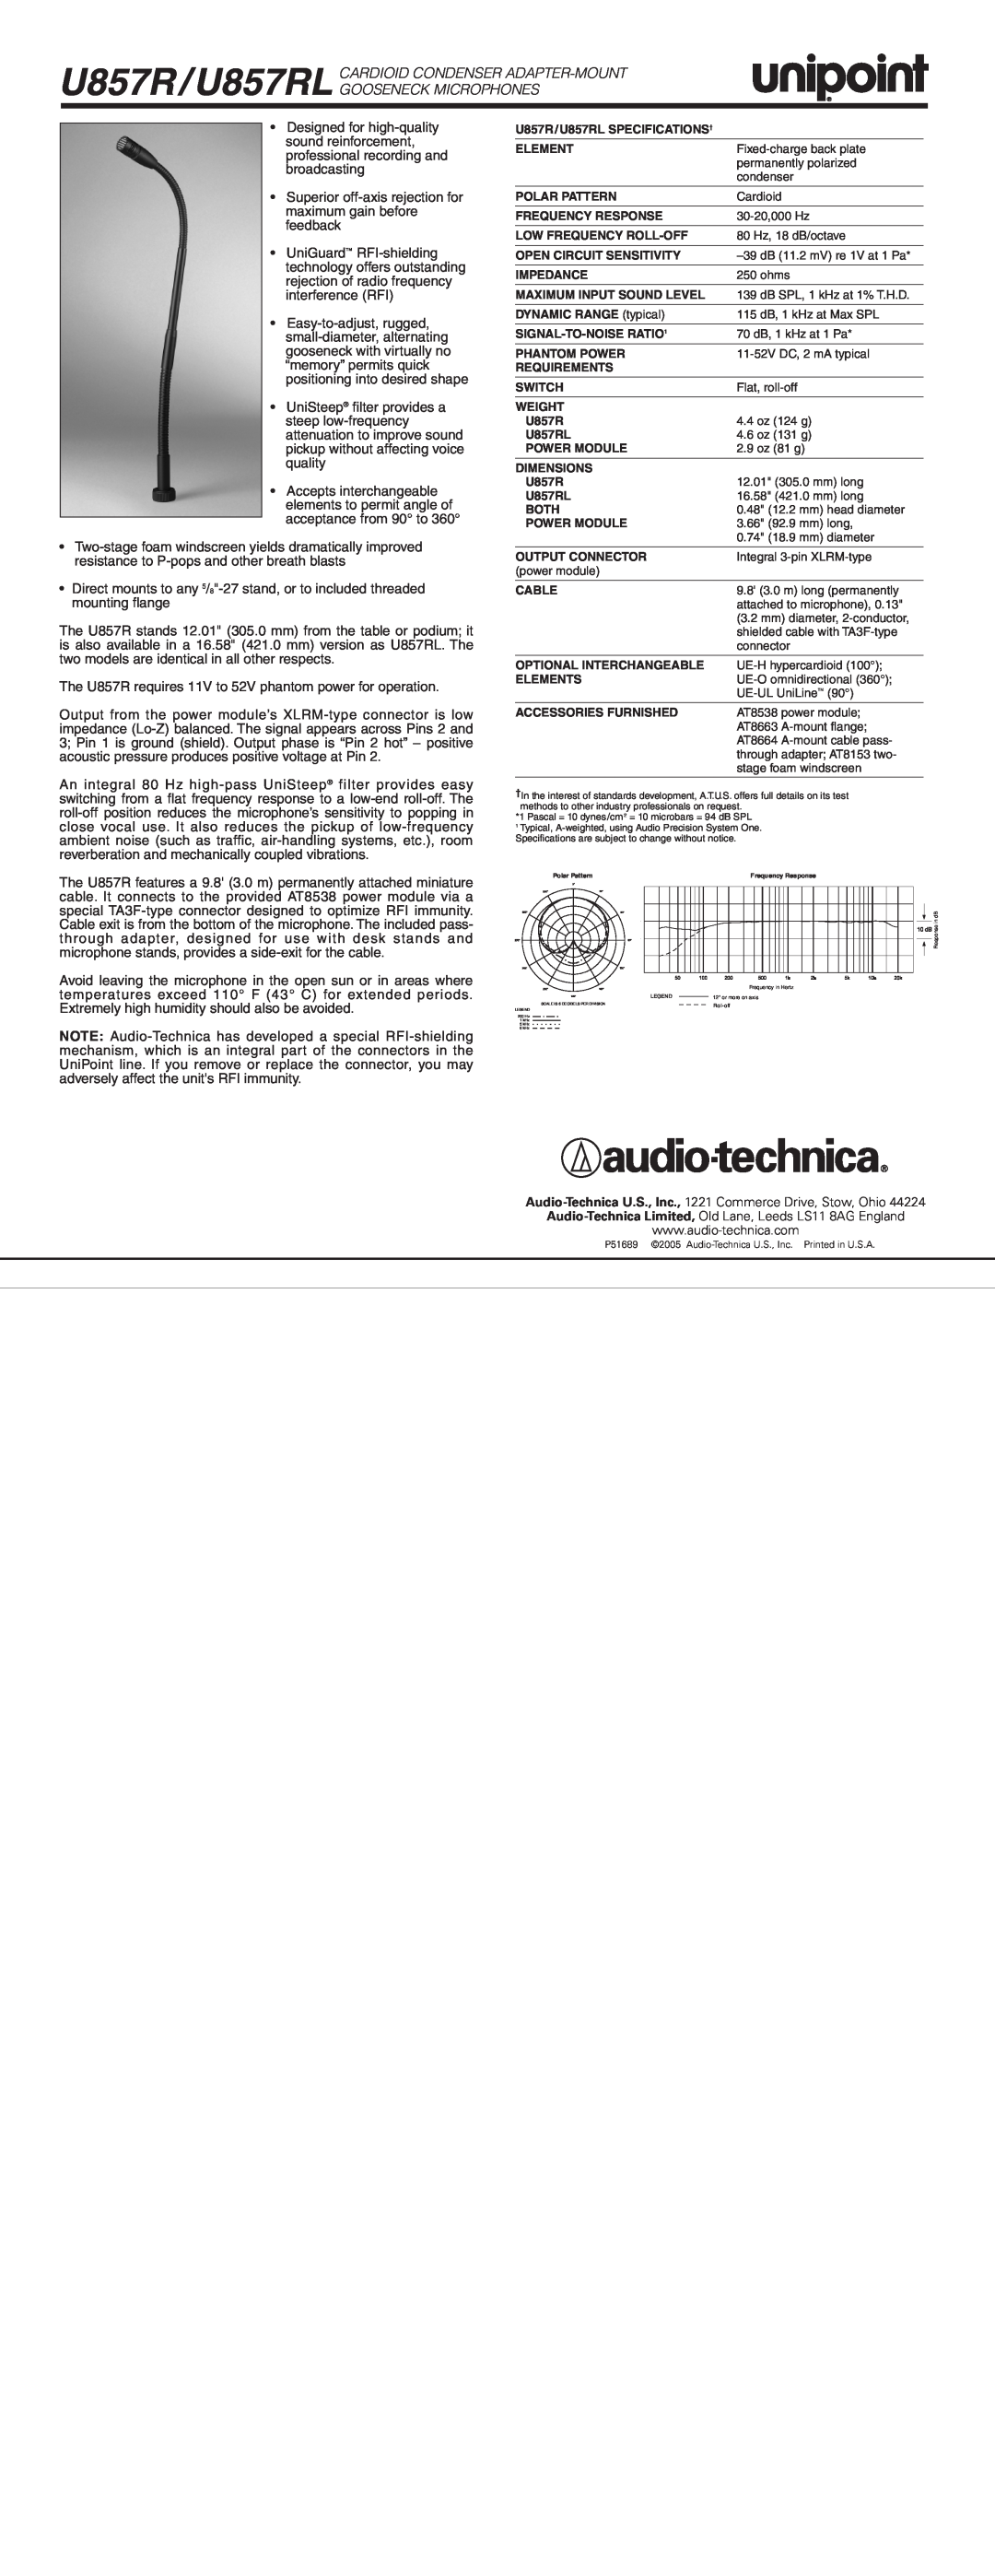 Audio-Technica specifications U857R/U857RL CARDIOID CONDENSER ADAPTER-MOUNT GOOSENECK MICROPHONES 